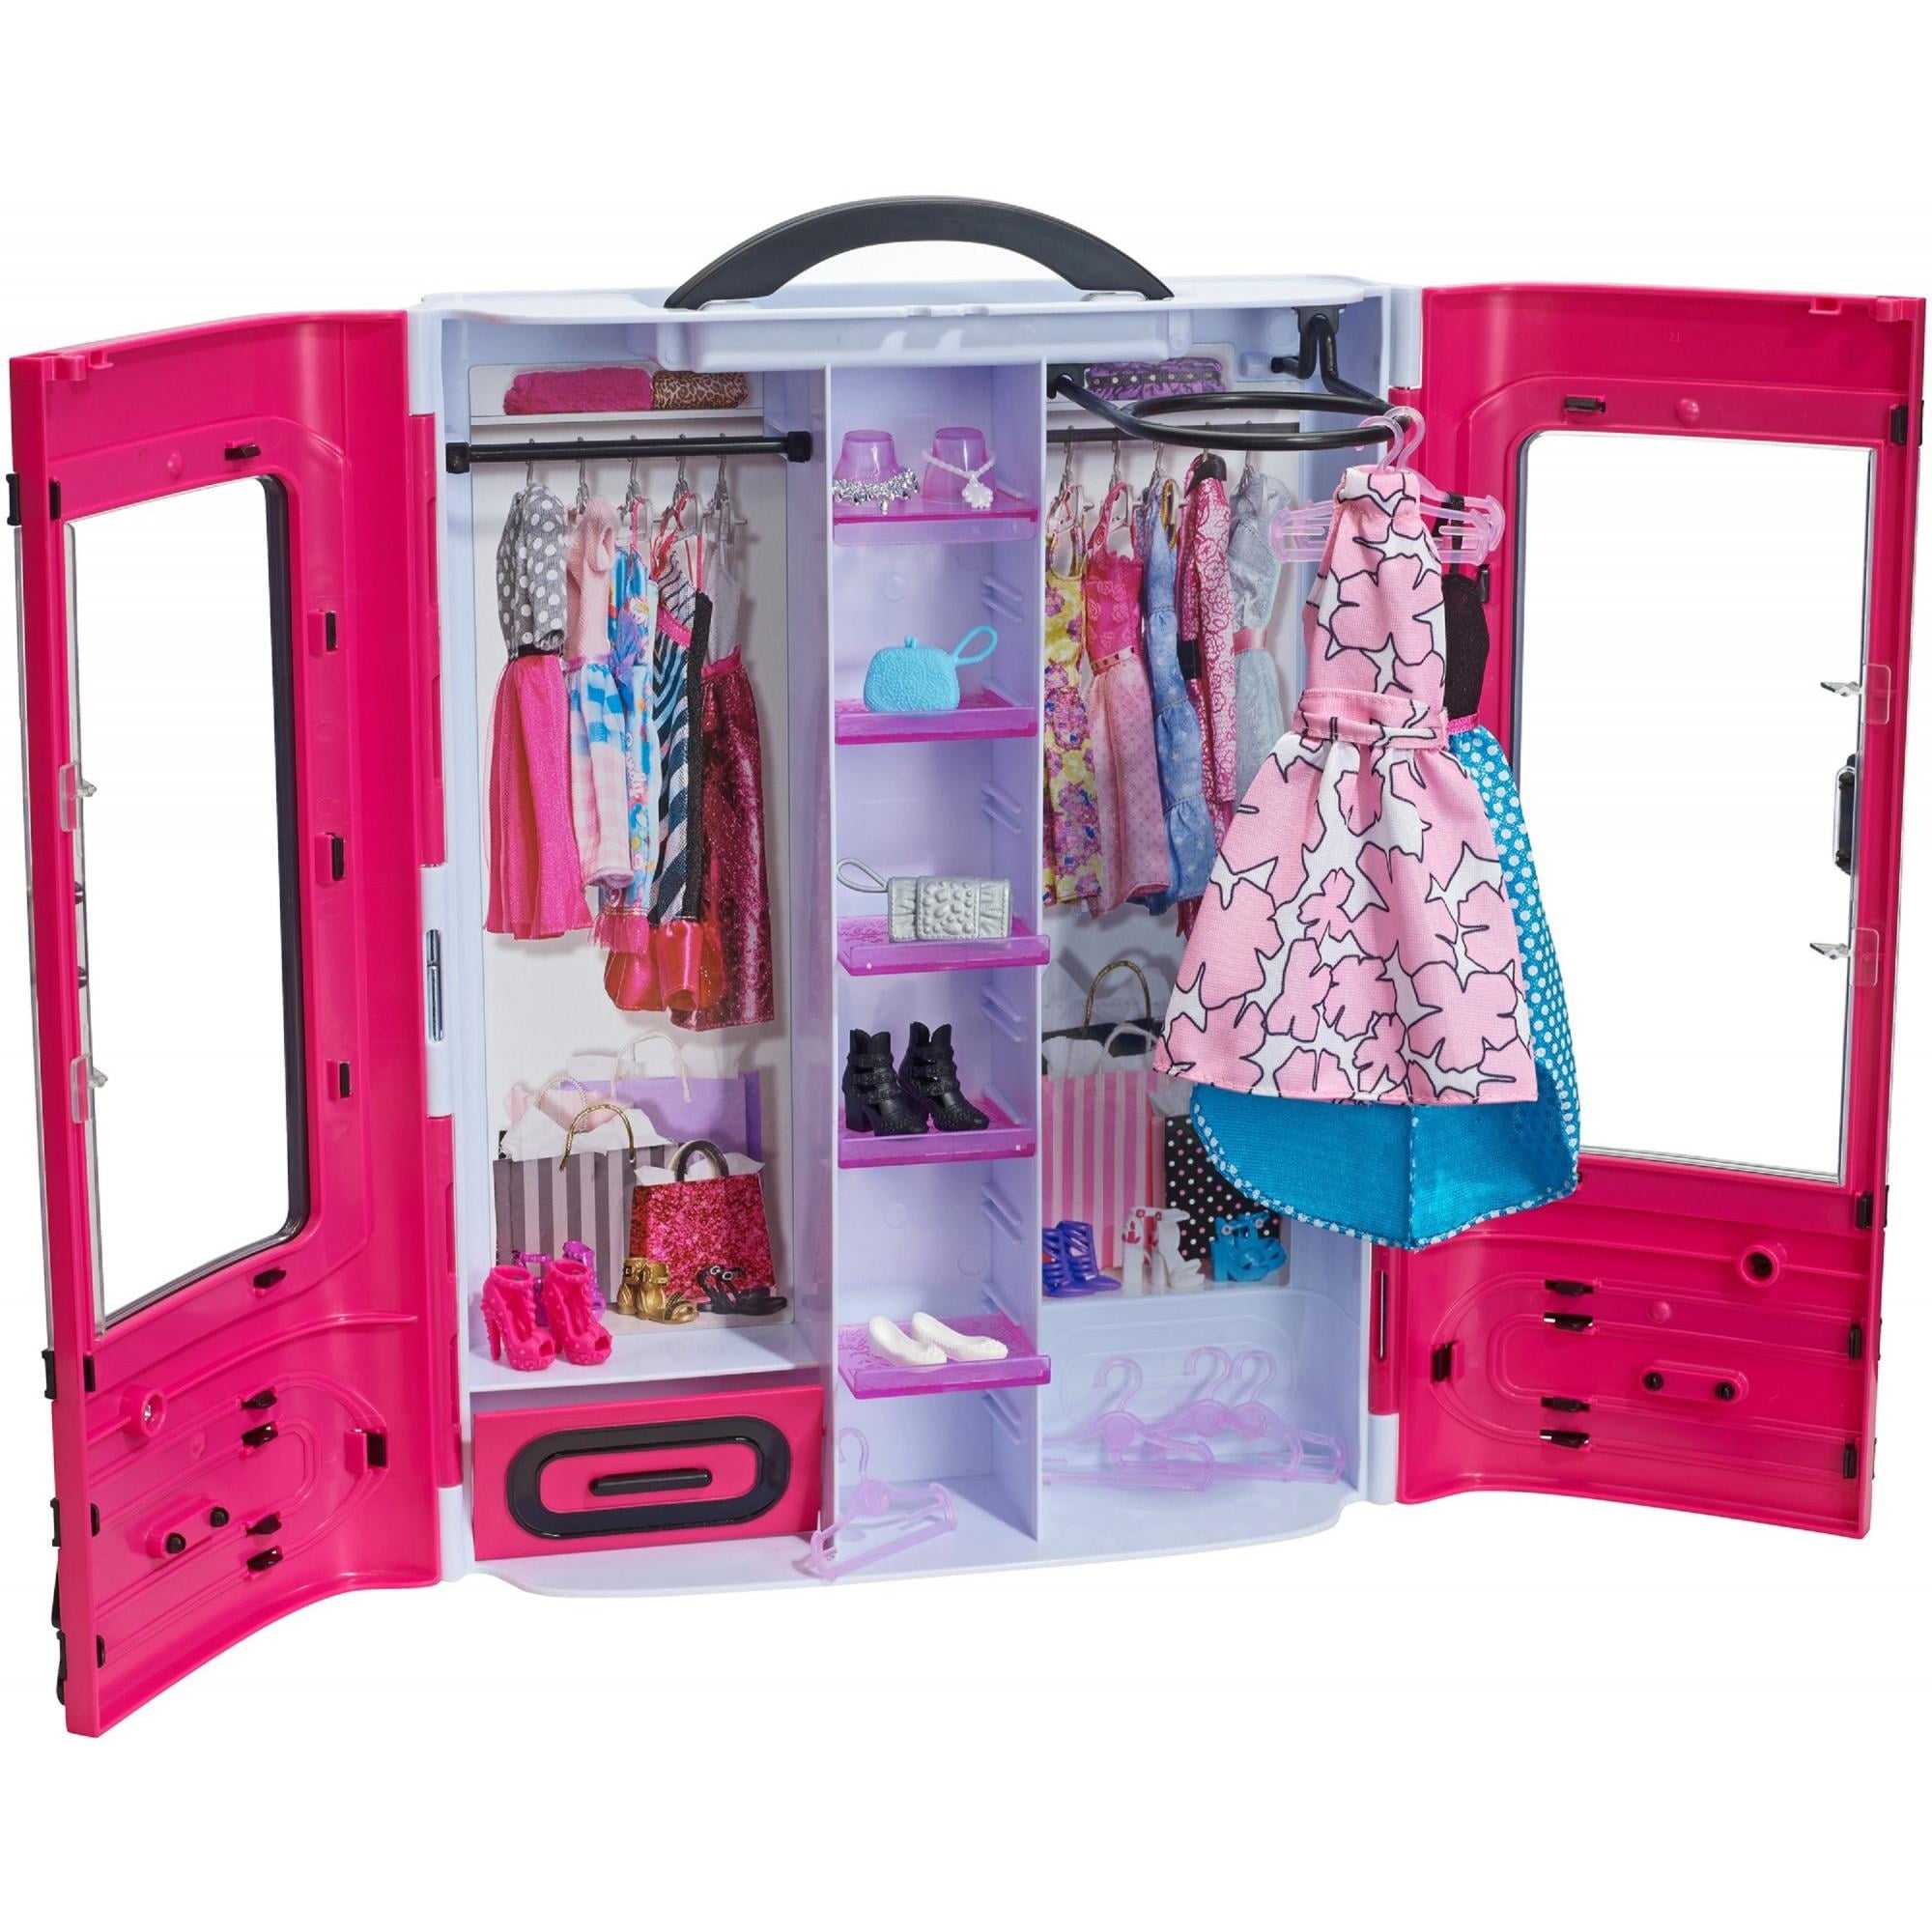 Гардероб барби. Шкаф Барби dmt57. Barbie шкаф (dmt57). Barbie шкаф (dmt57) розовый. Barbie шкаф Fashionistas Ultimate.